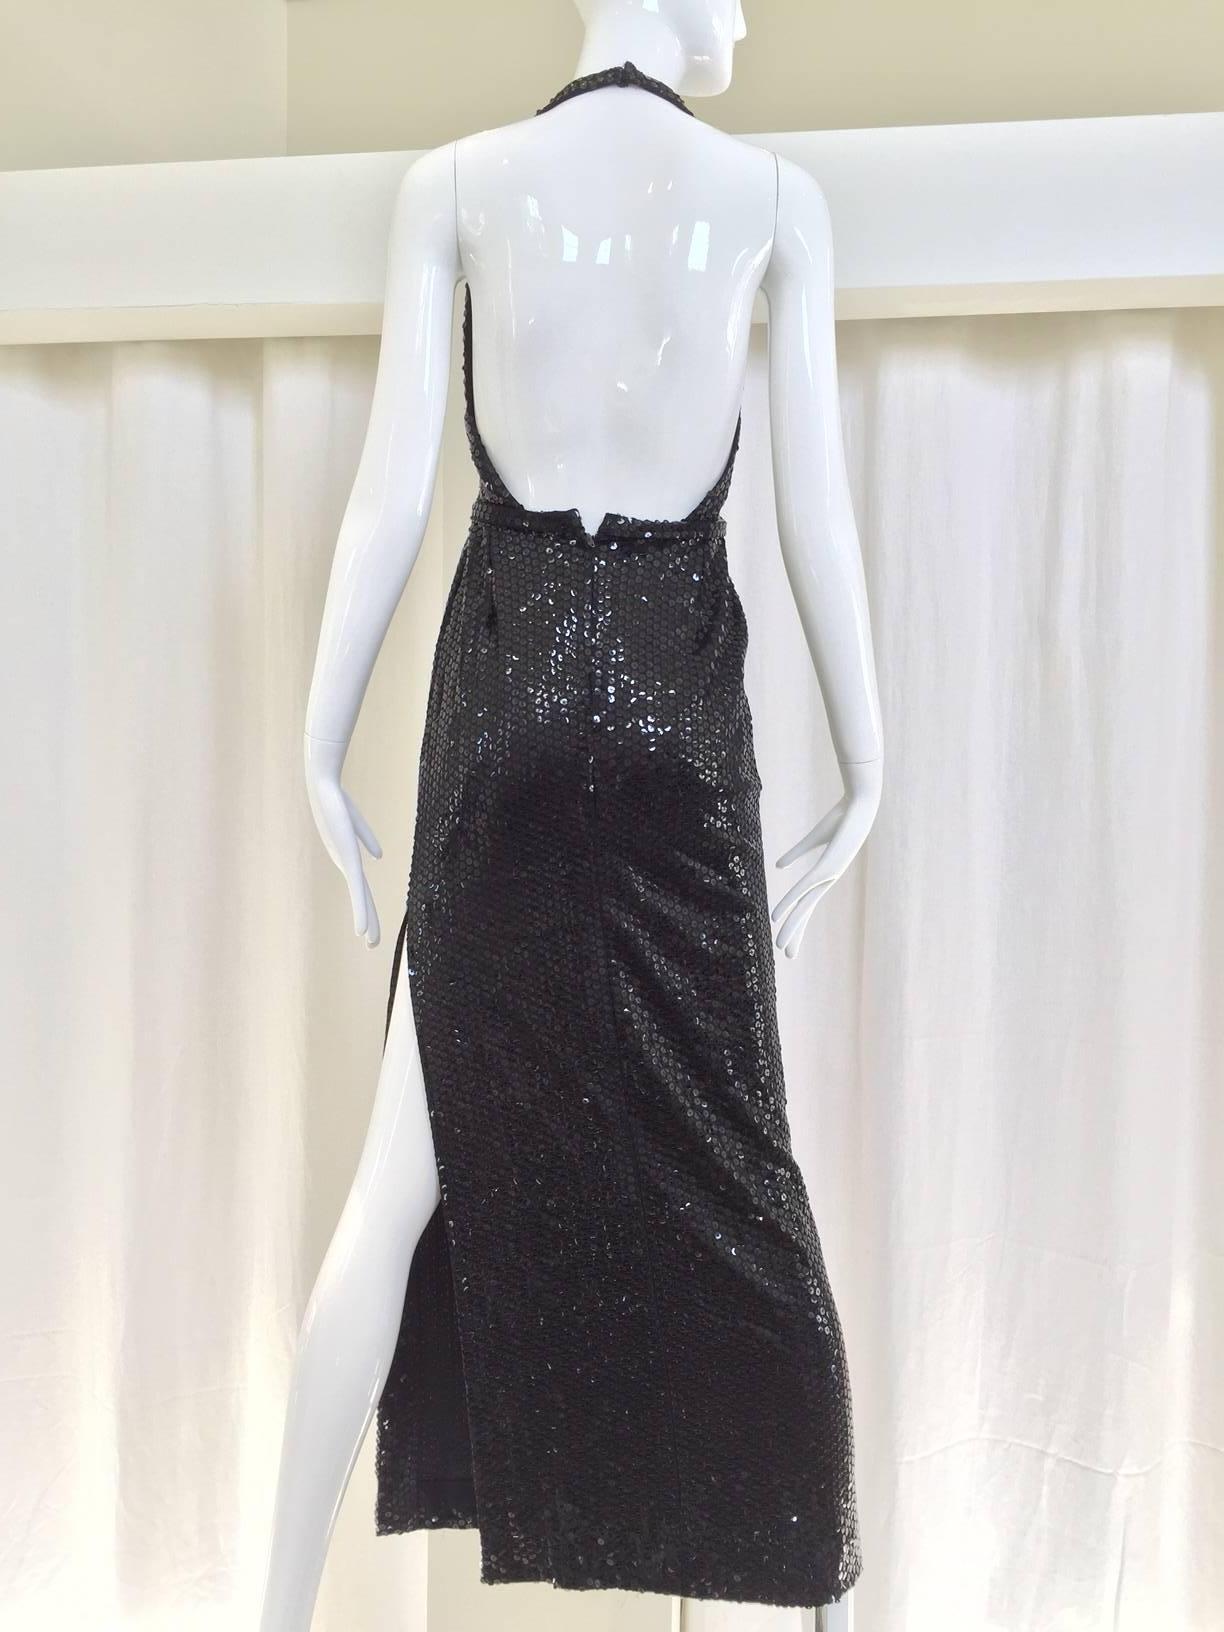 1970s Cyreld - paris black sequin halter dress with side slit.
Bust: 32